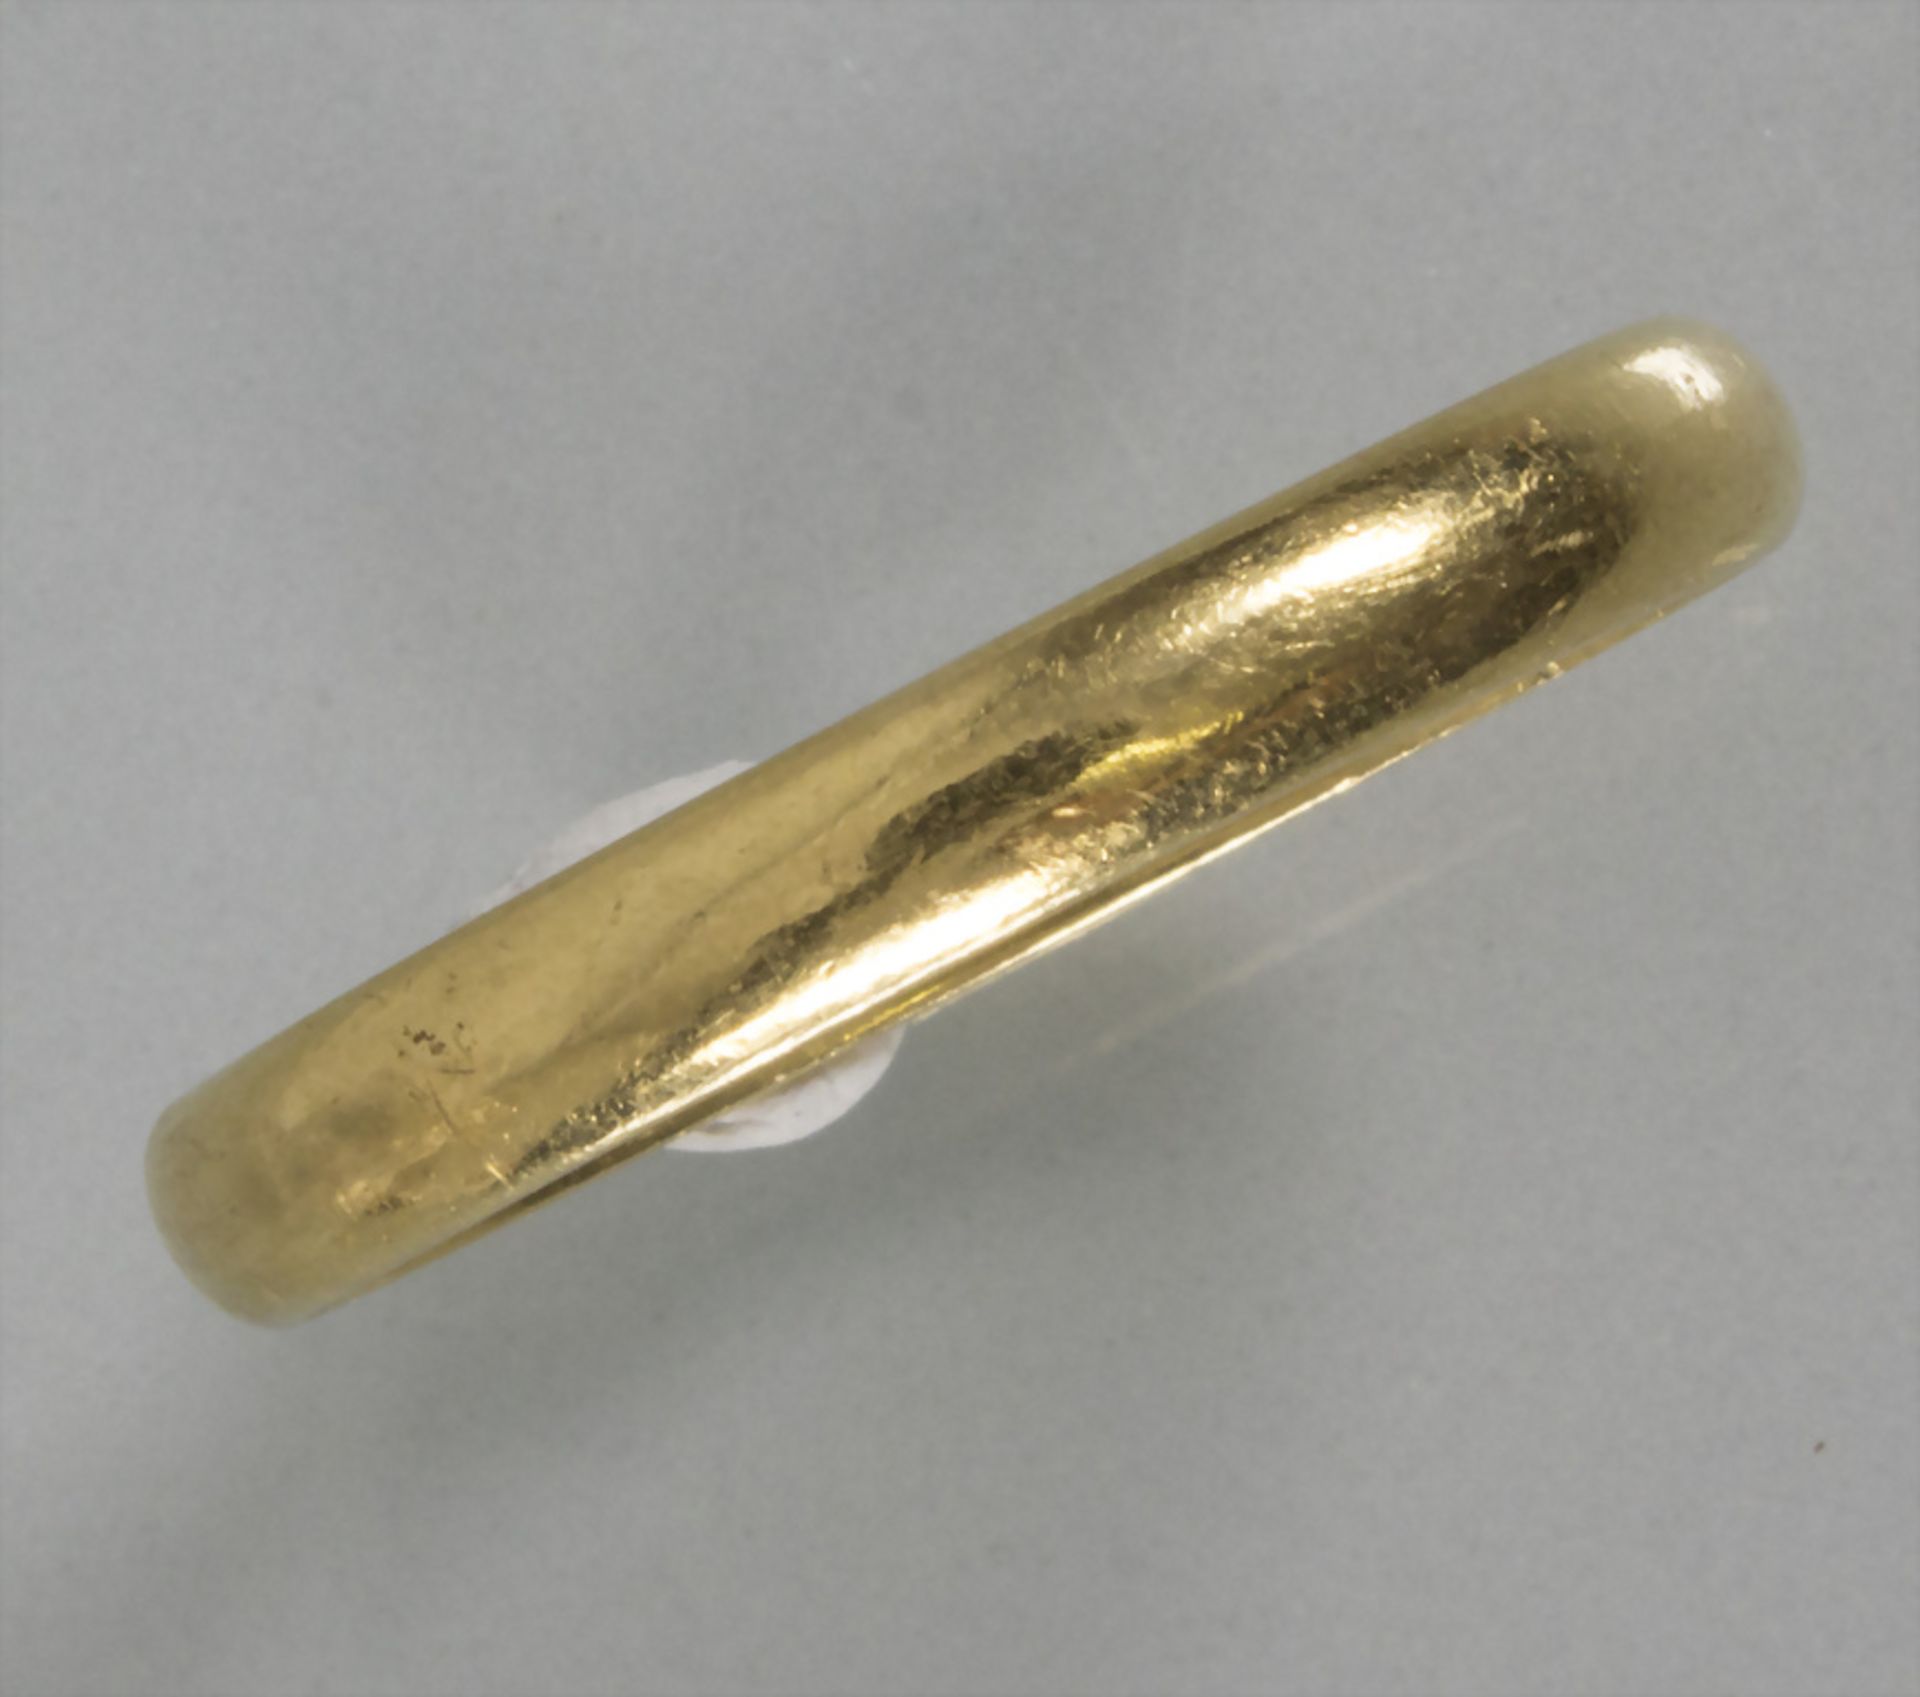 Damenring / An 18 ct ladies gold ring